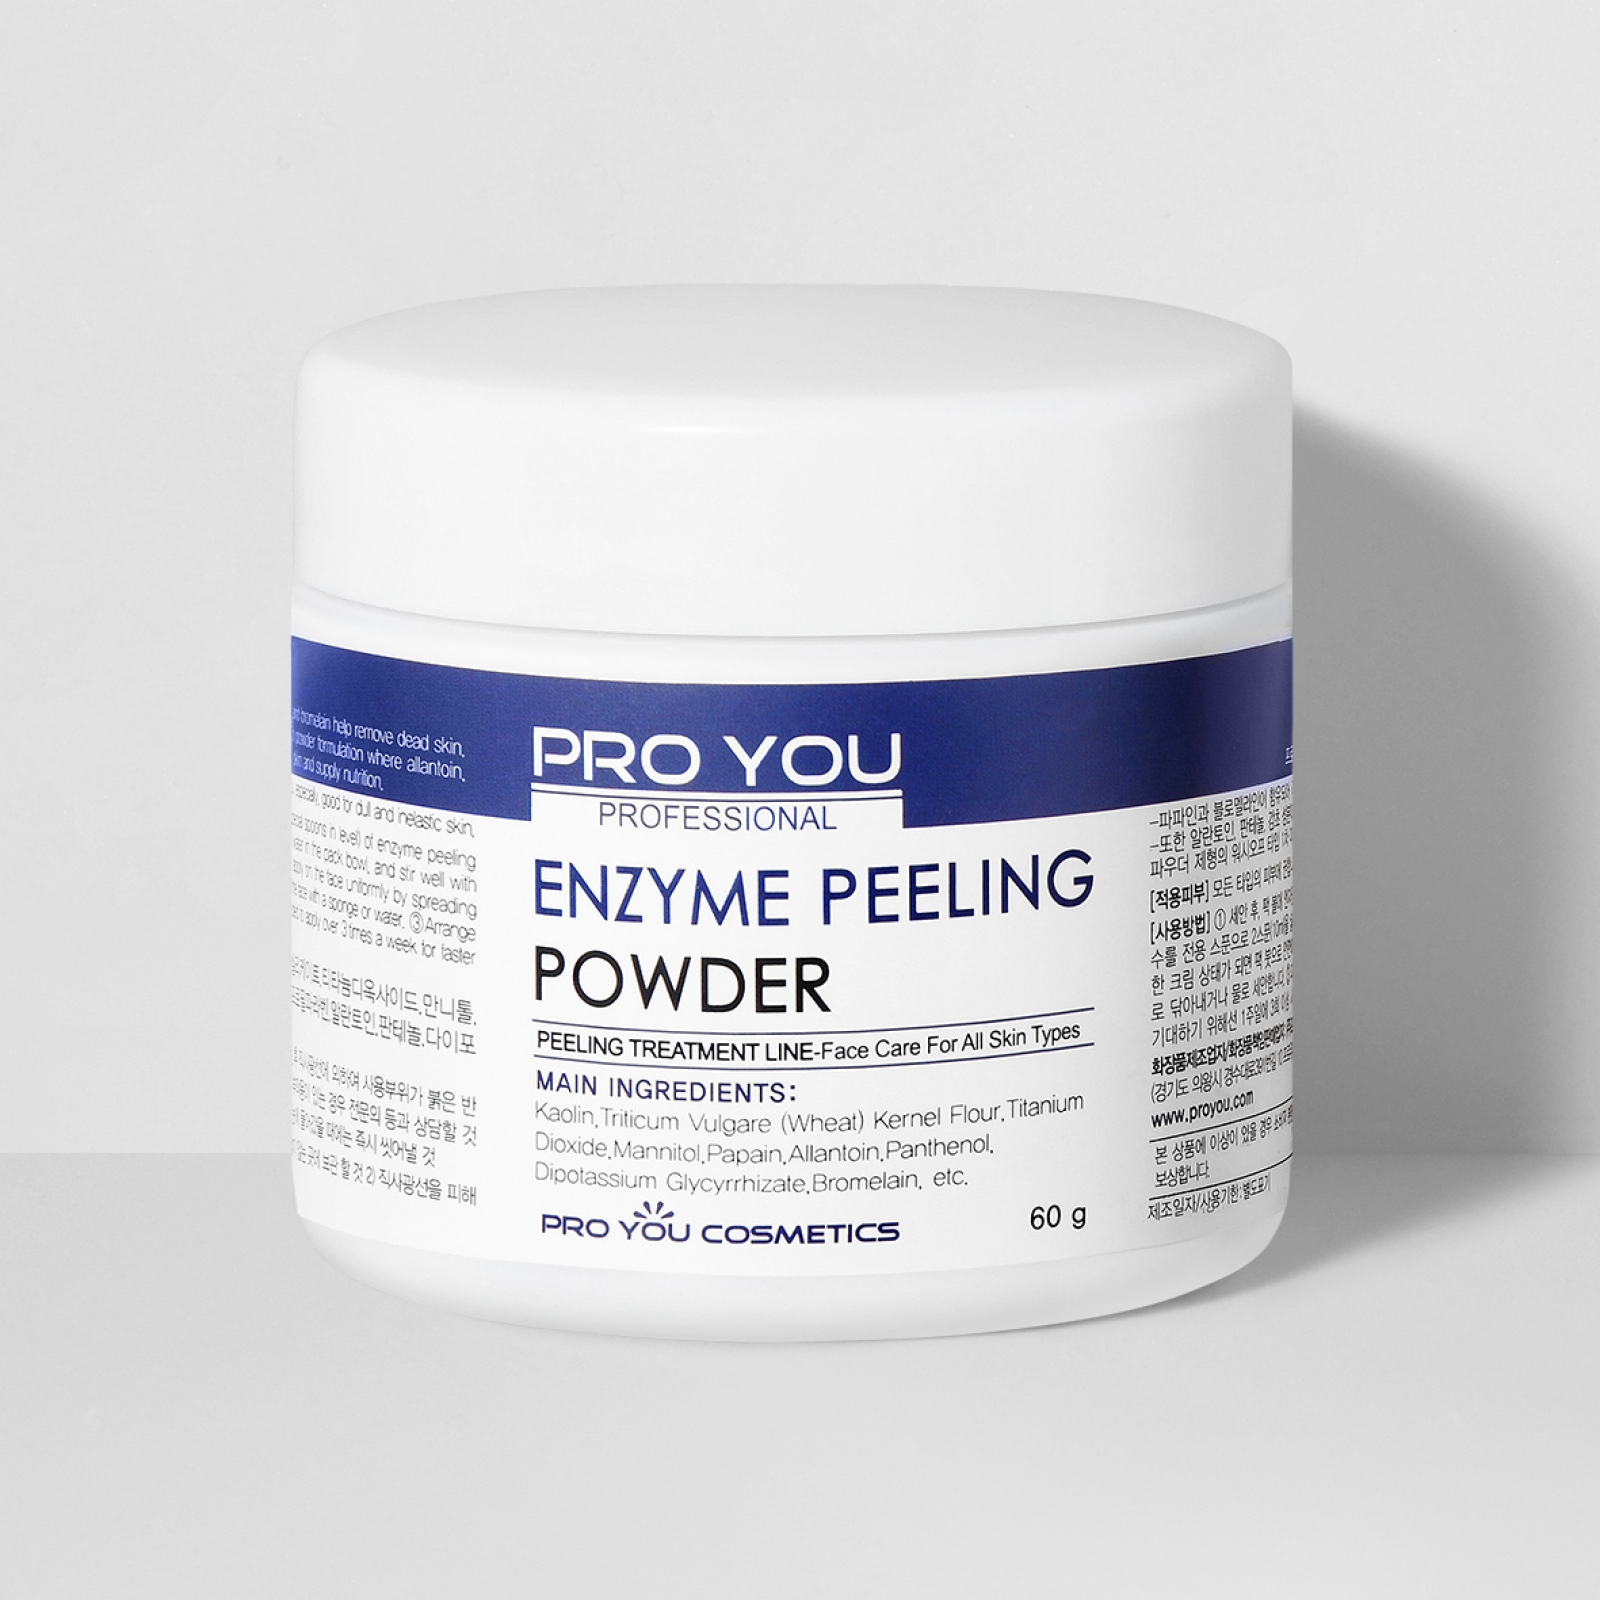 Делікатний ензимний пілінг проти тьмяності шкіри PRO YOU Professional Enzyme Peeling Powder